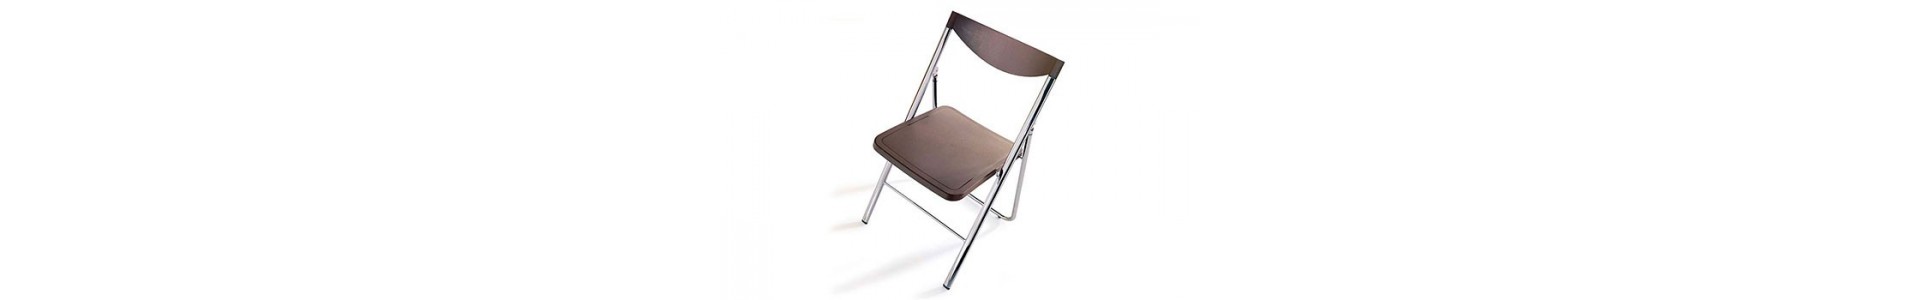 Sillas modernas Ozzio. Tienda online sillas diseño Muebles Lluesma